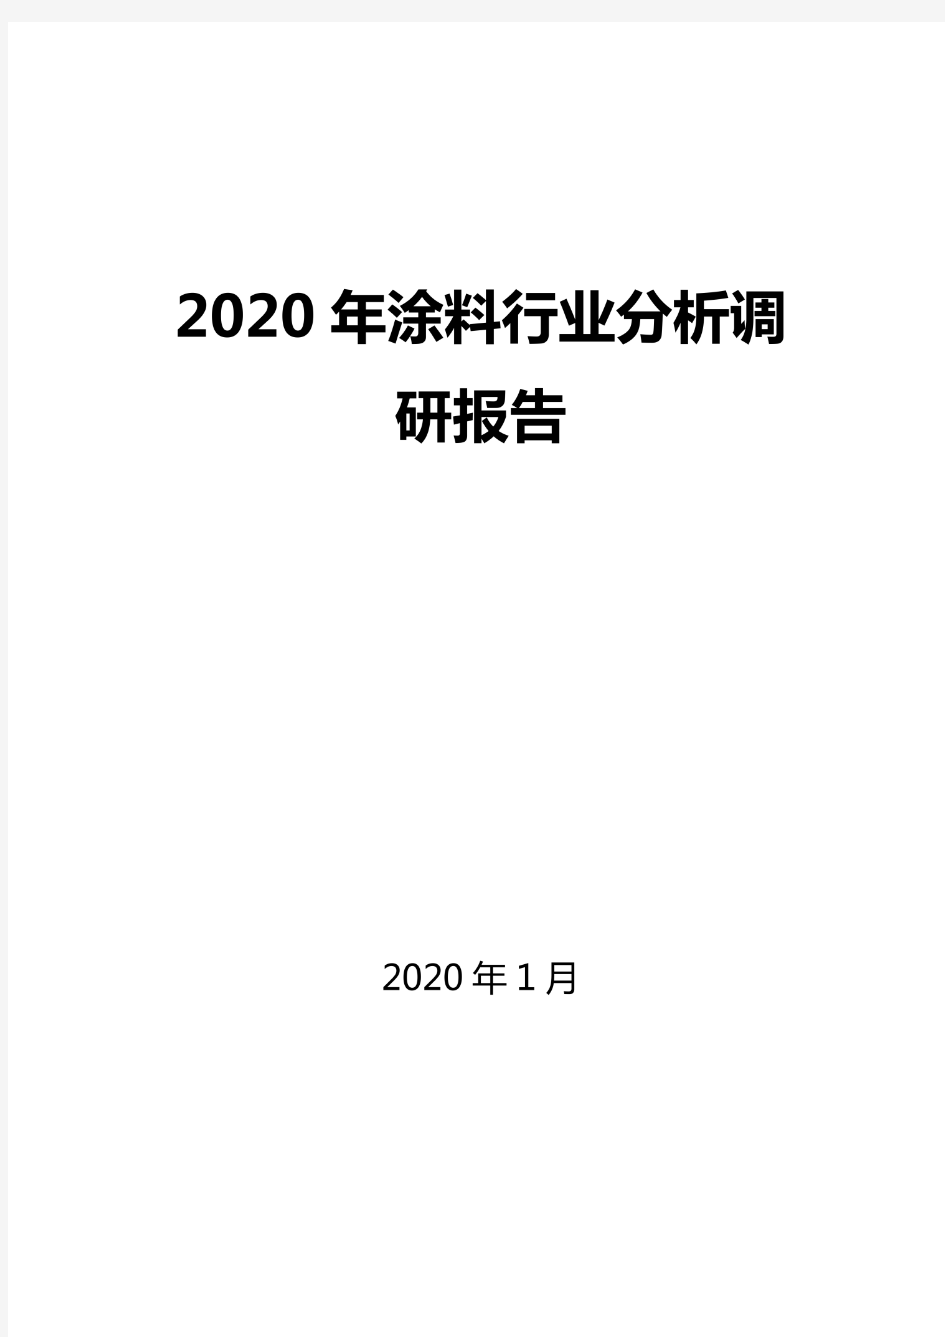 2020涂料行业分析报告